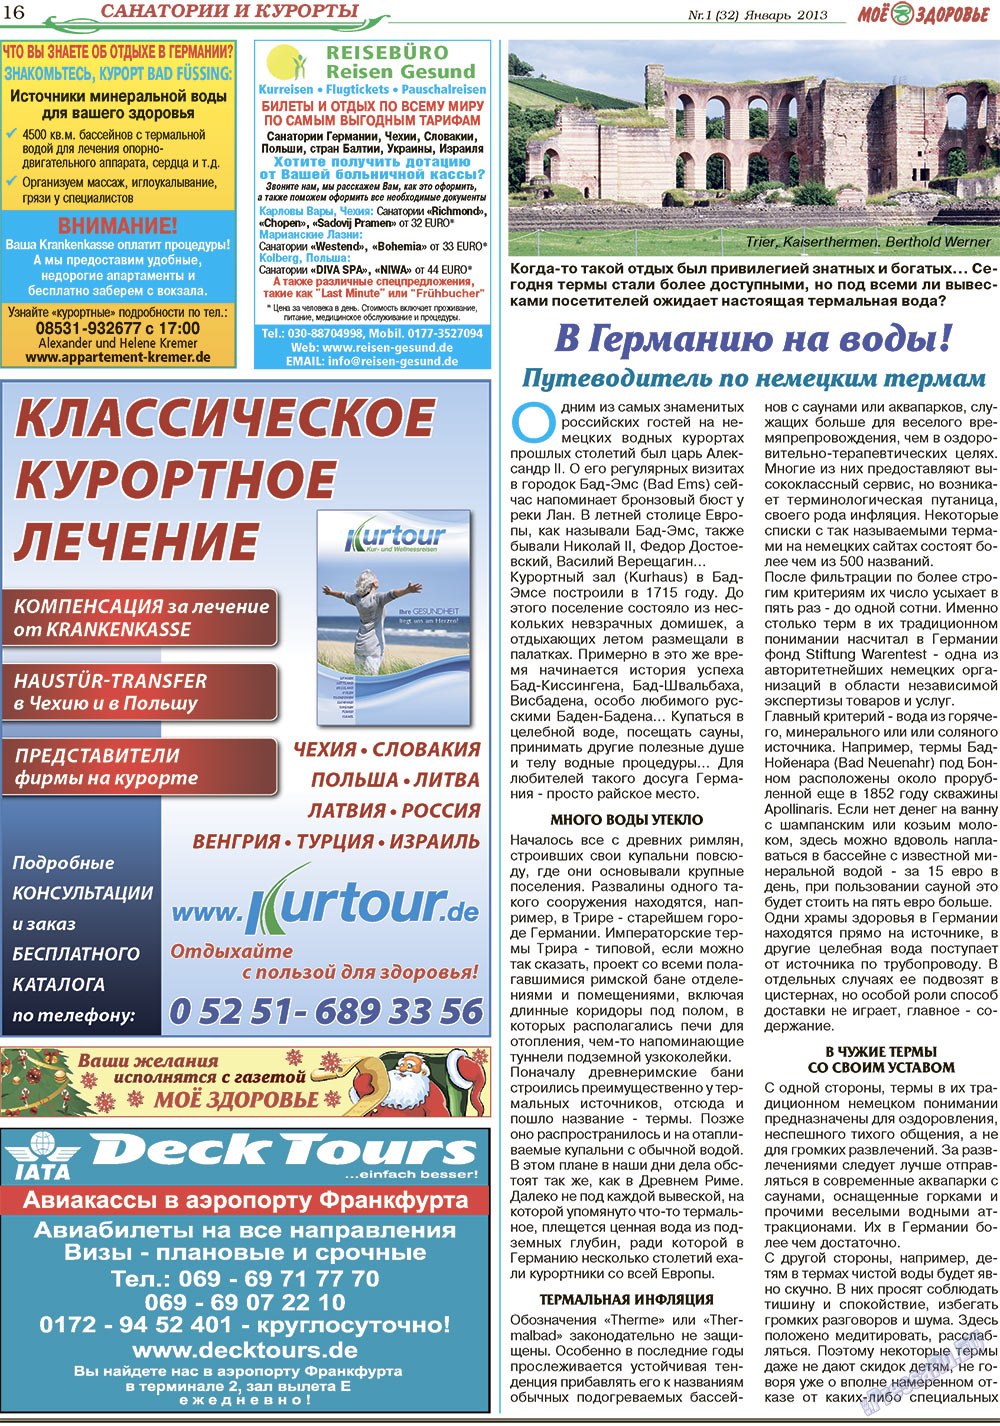 Кругозор, газета. 2013 №1 стр.16